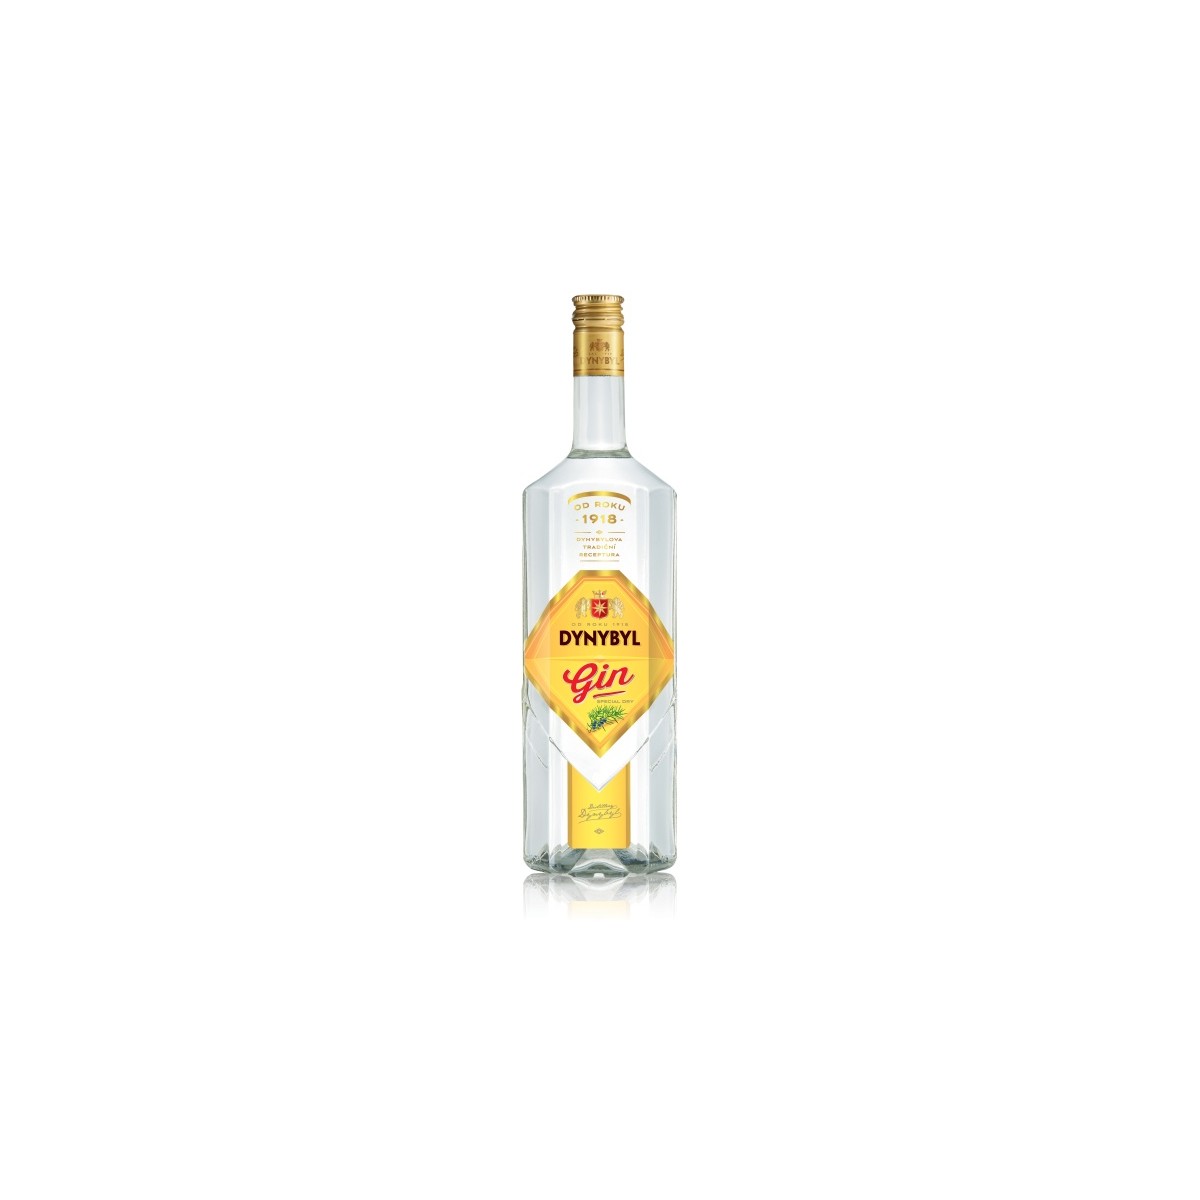 Dynybyl Special Dry gin 1l